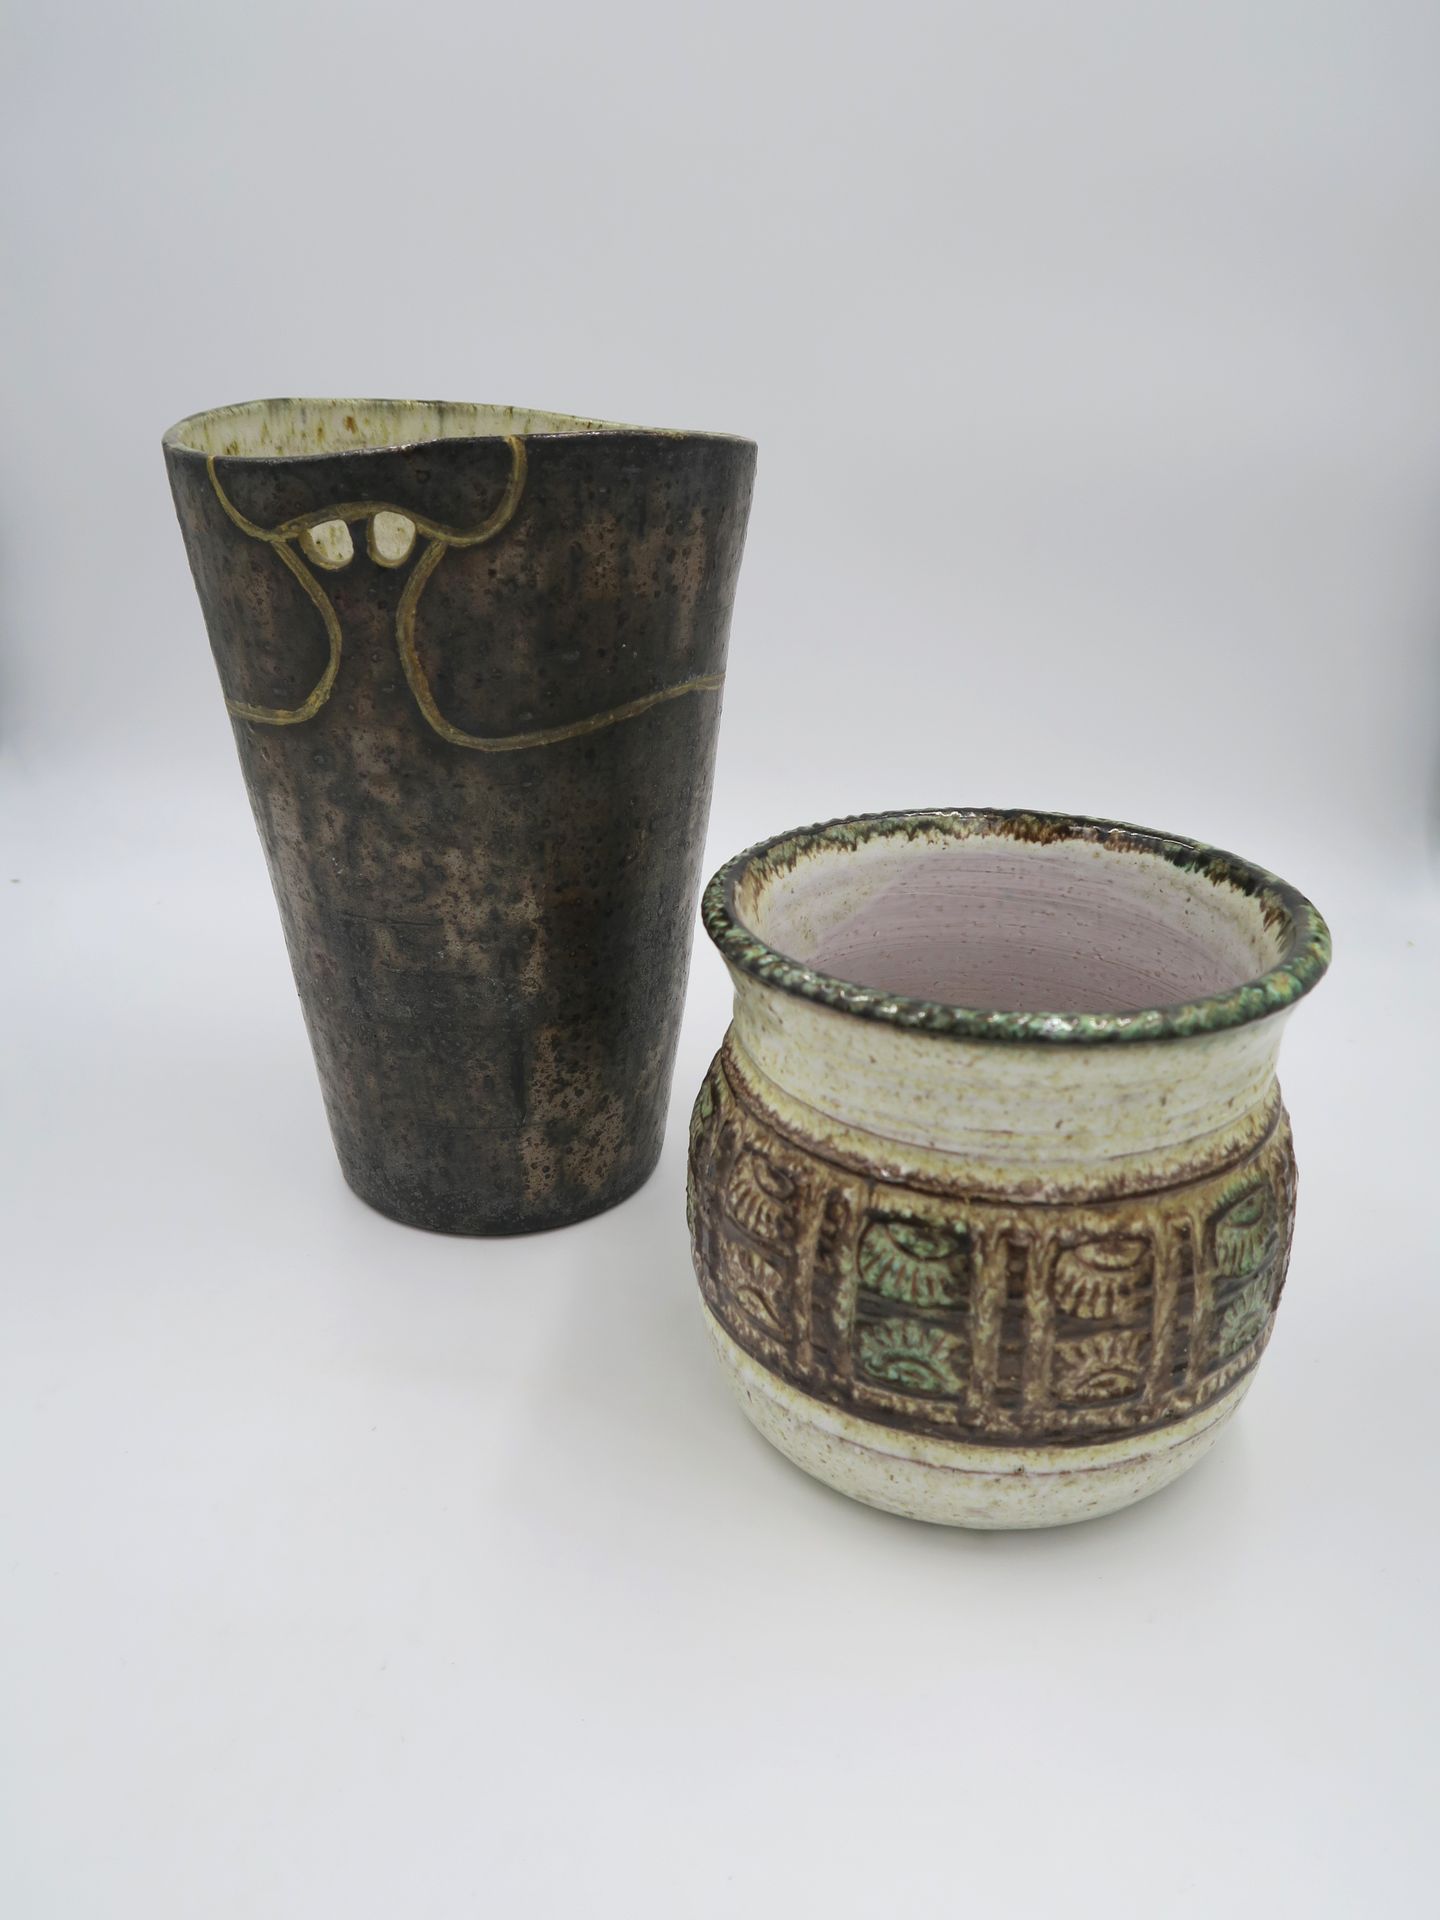 Null Giraud in Vallauris

Topf aus beige-braun-grün glasierter Keramik mit ausge&hellip;